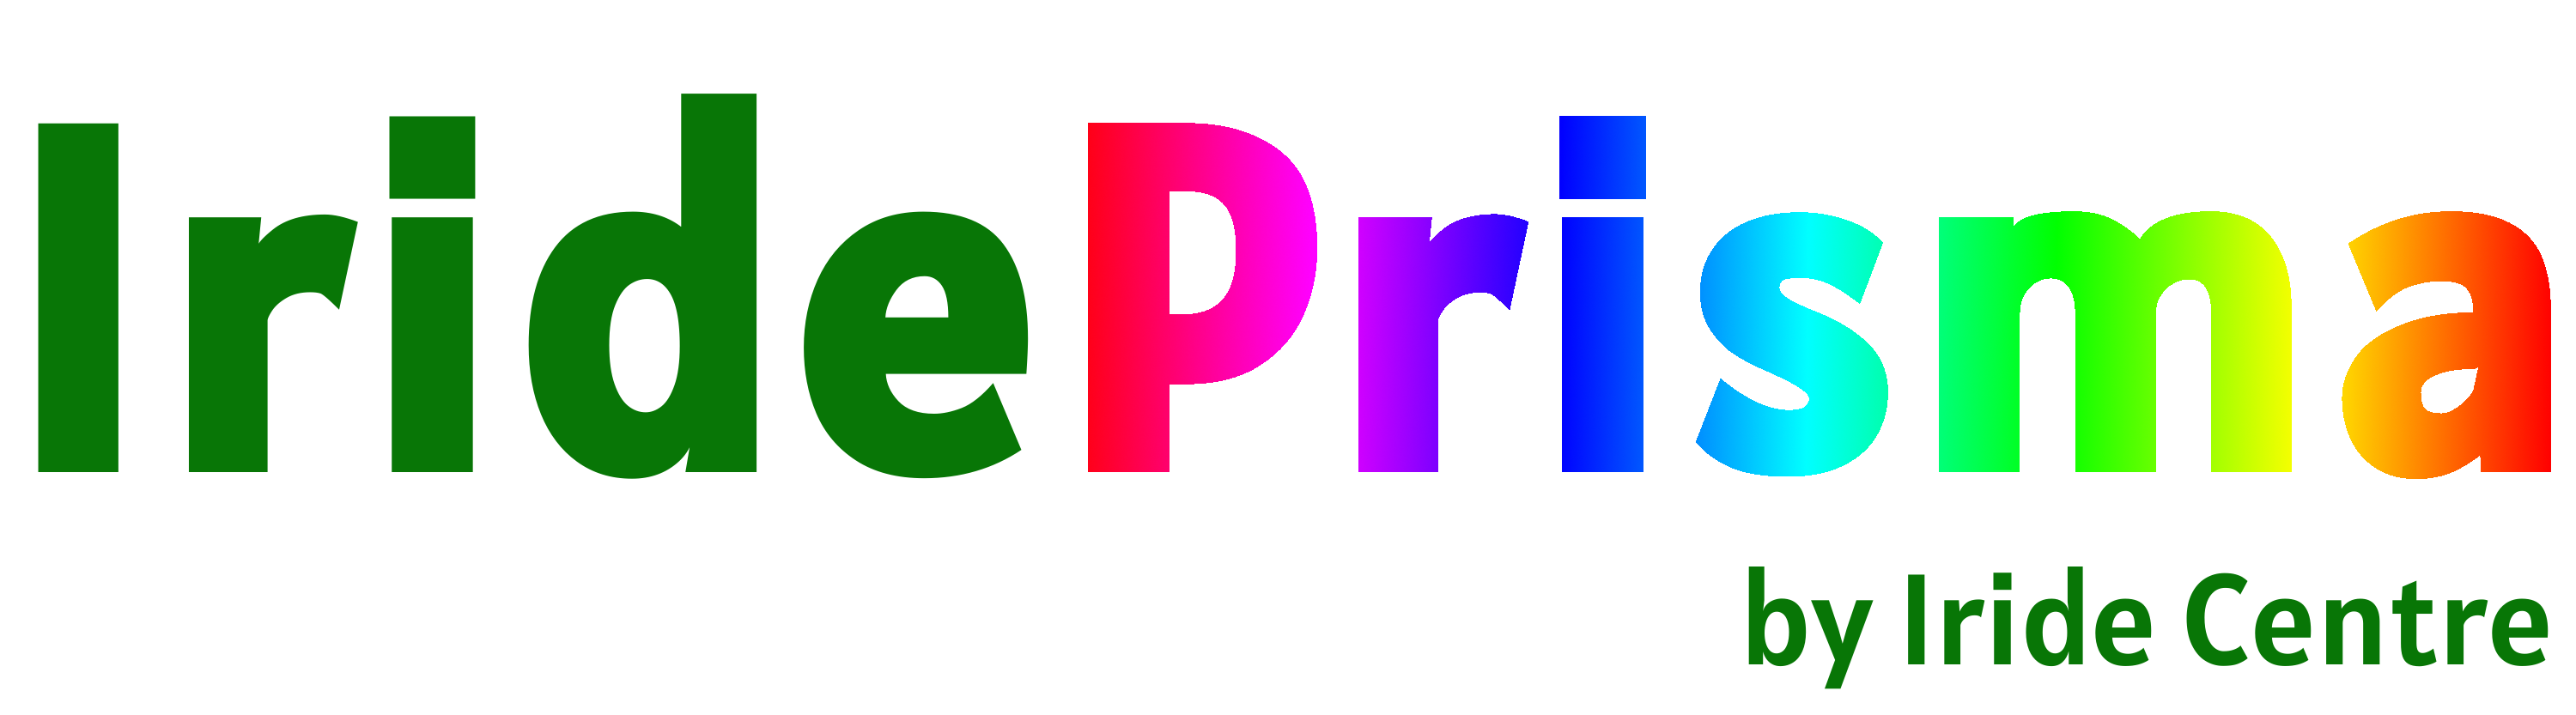 Logo Prisma pa sfond